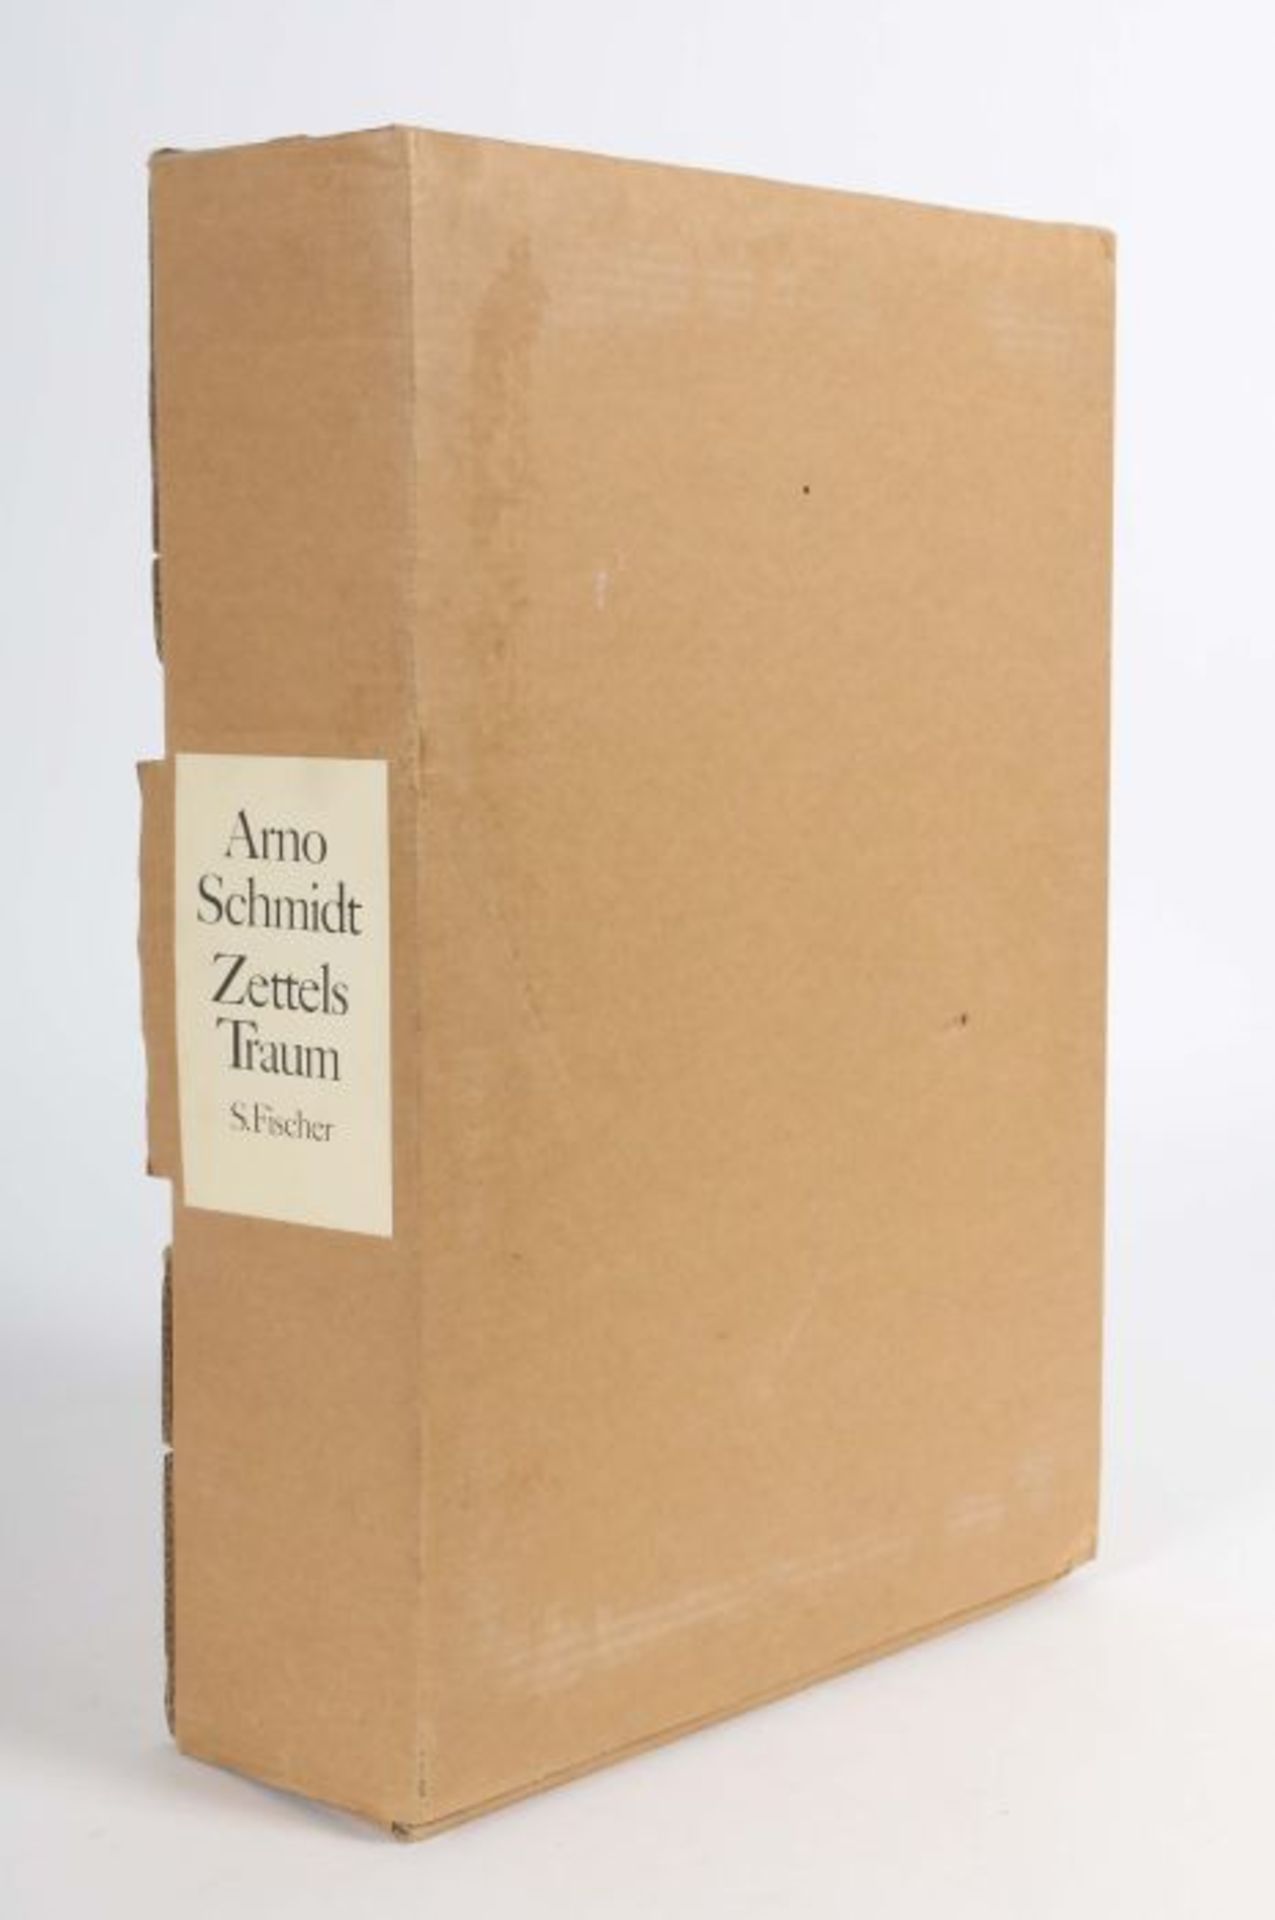 Schmidt, ArnoZettels Traum, Frankfurt, S. Fischer, 1986, 2. Auflage der Studienausgabe in 8 Heften, - Bild 4 aus 4